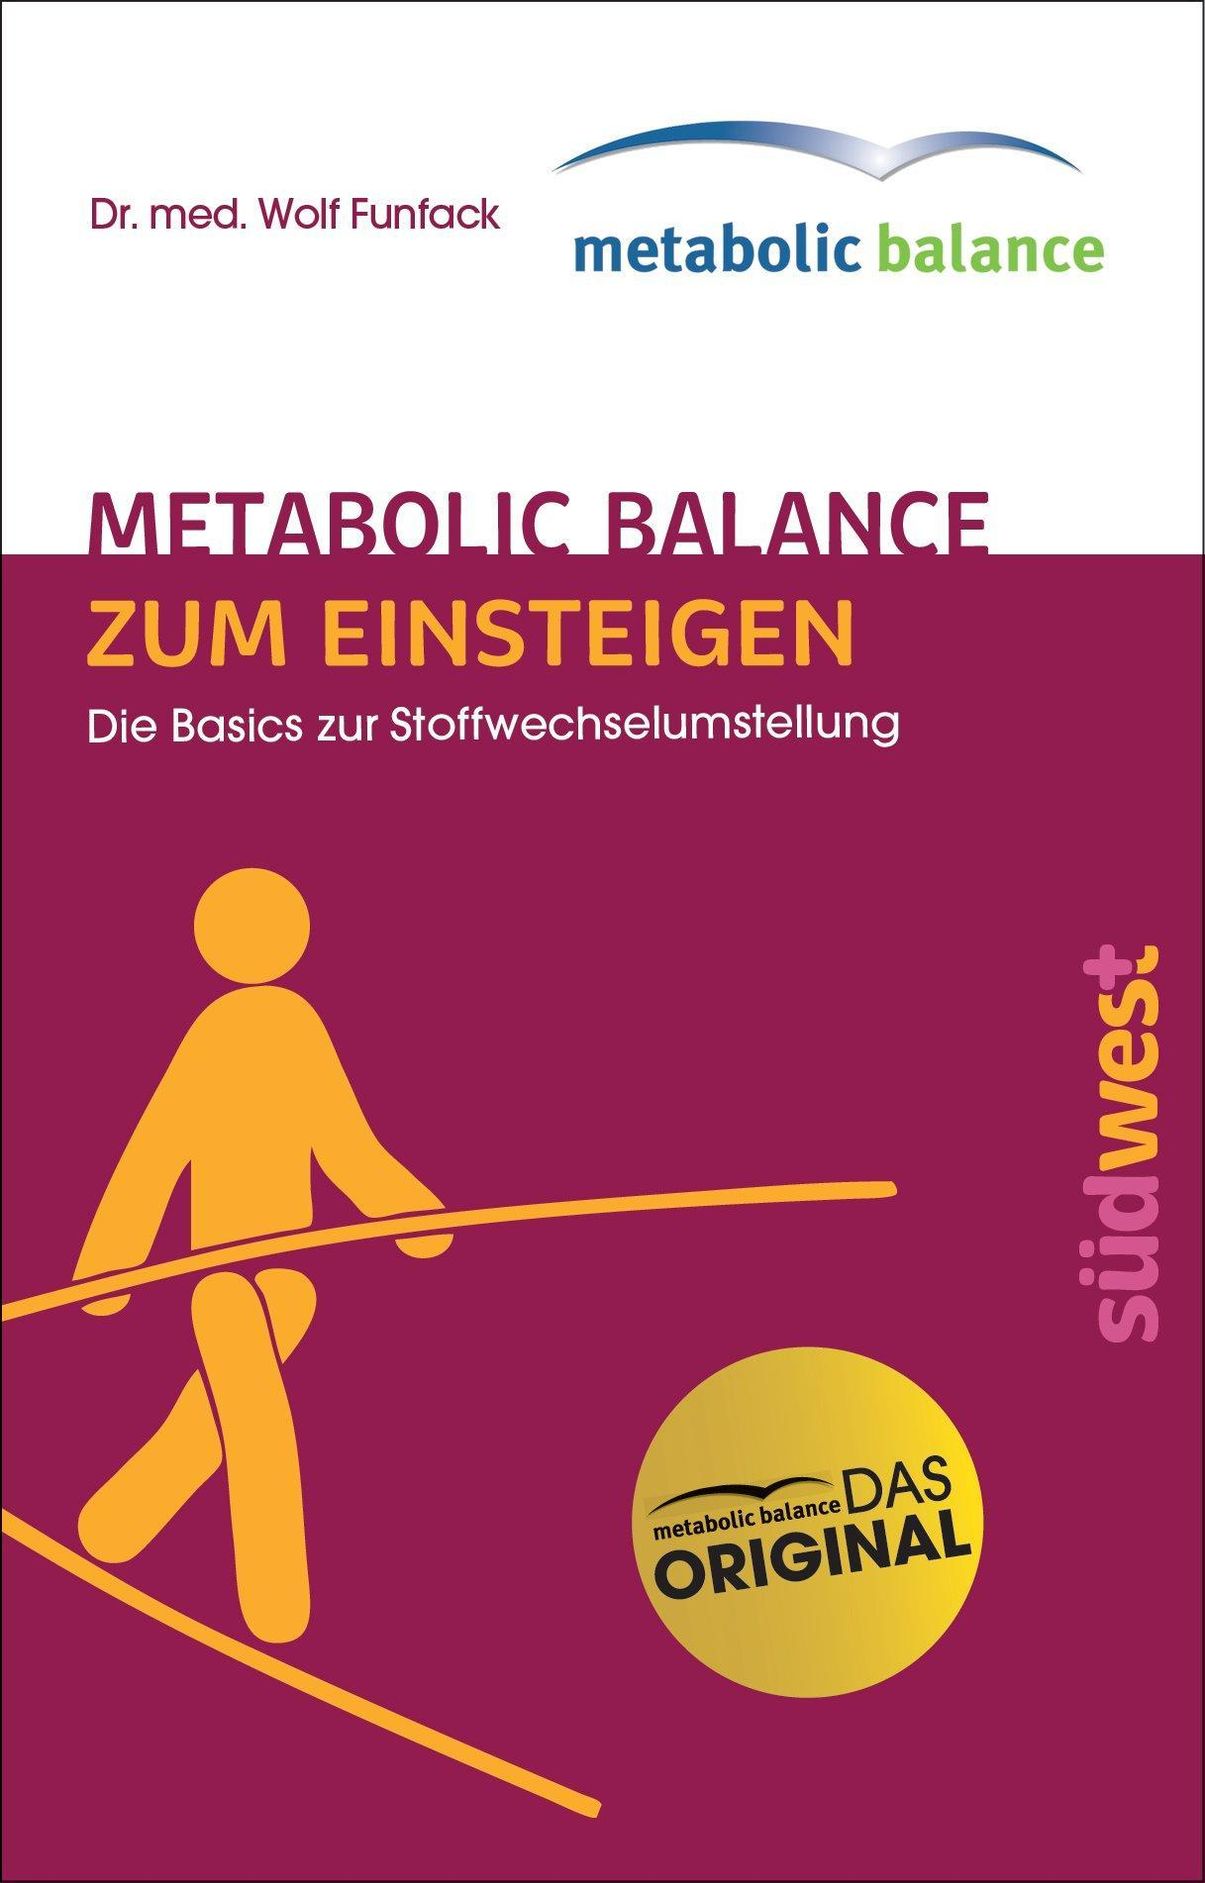 metabolic balance Zum Einsteigen eBook v. Wolf Funfack | Weltbild